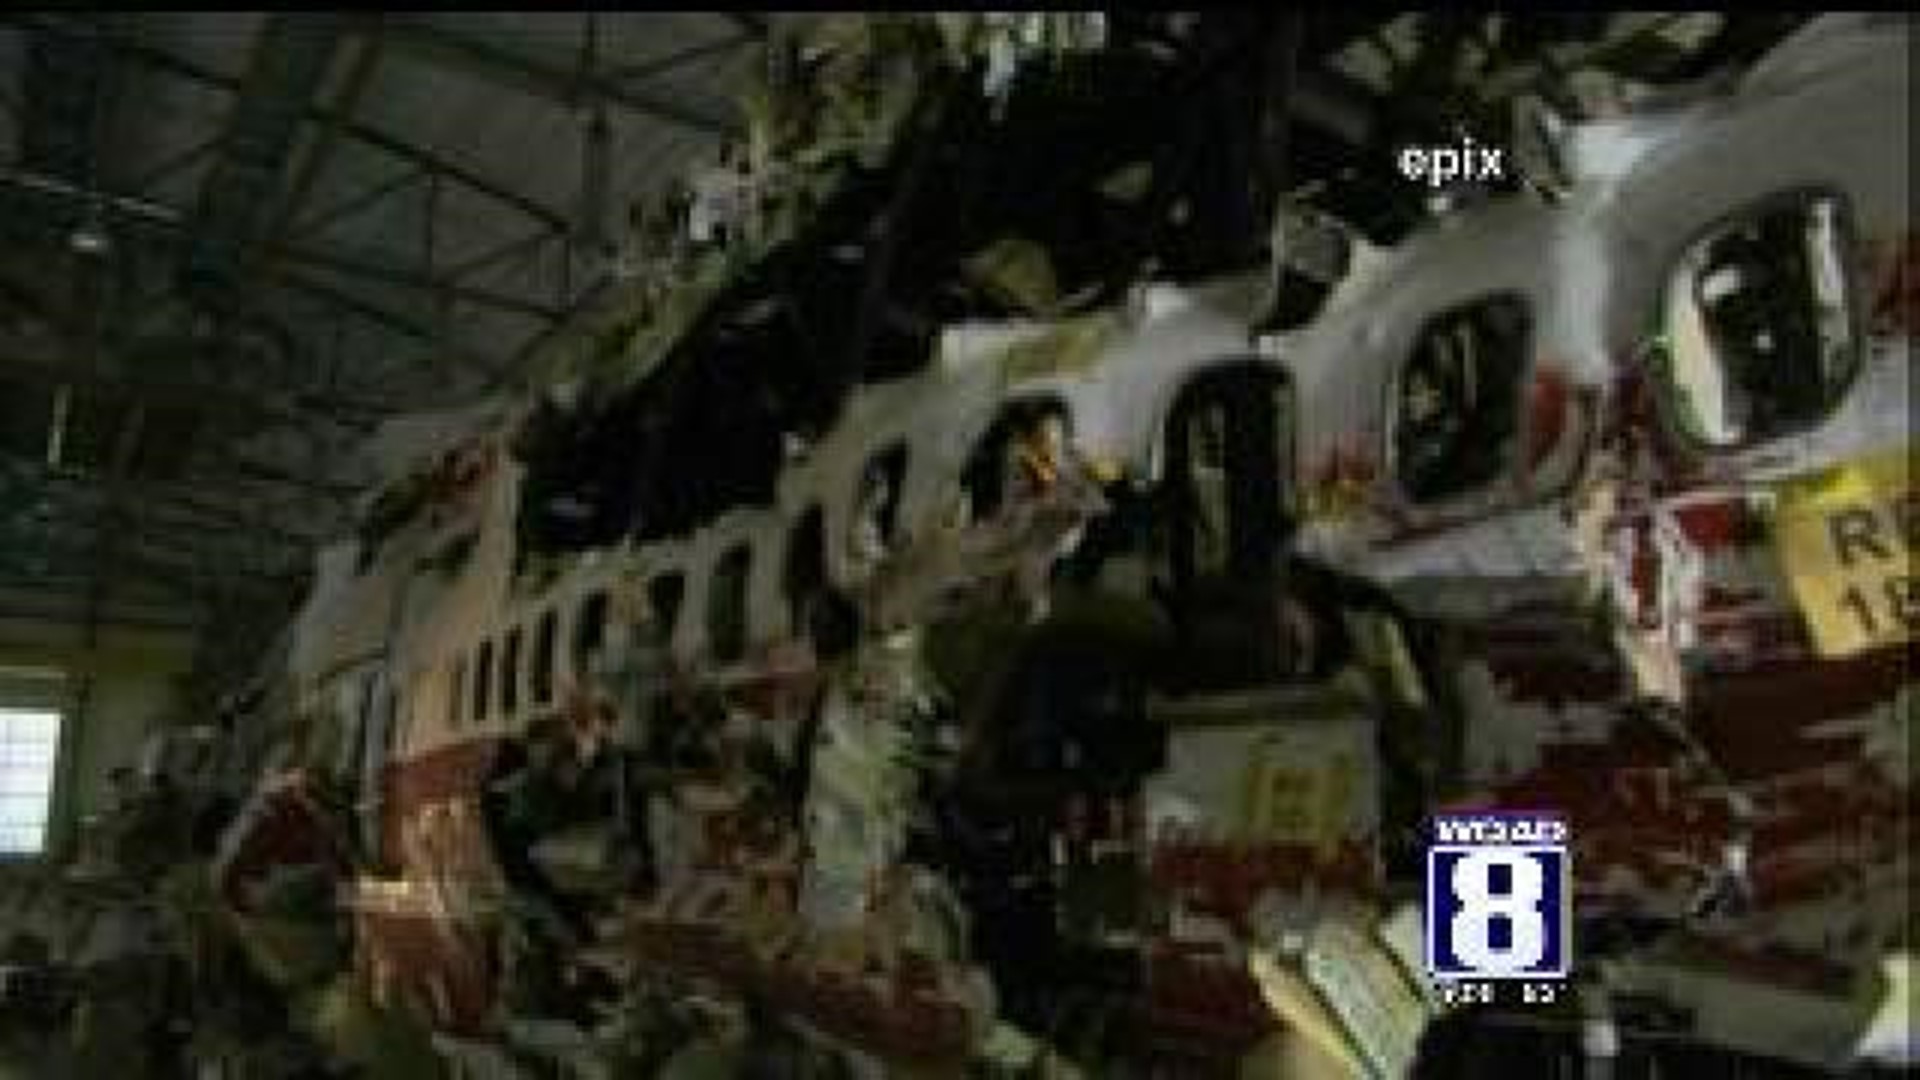 TWA 800 an accident, say investigators